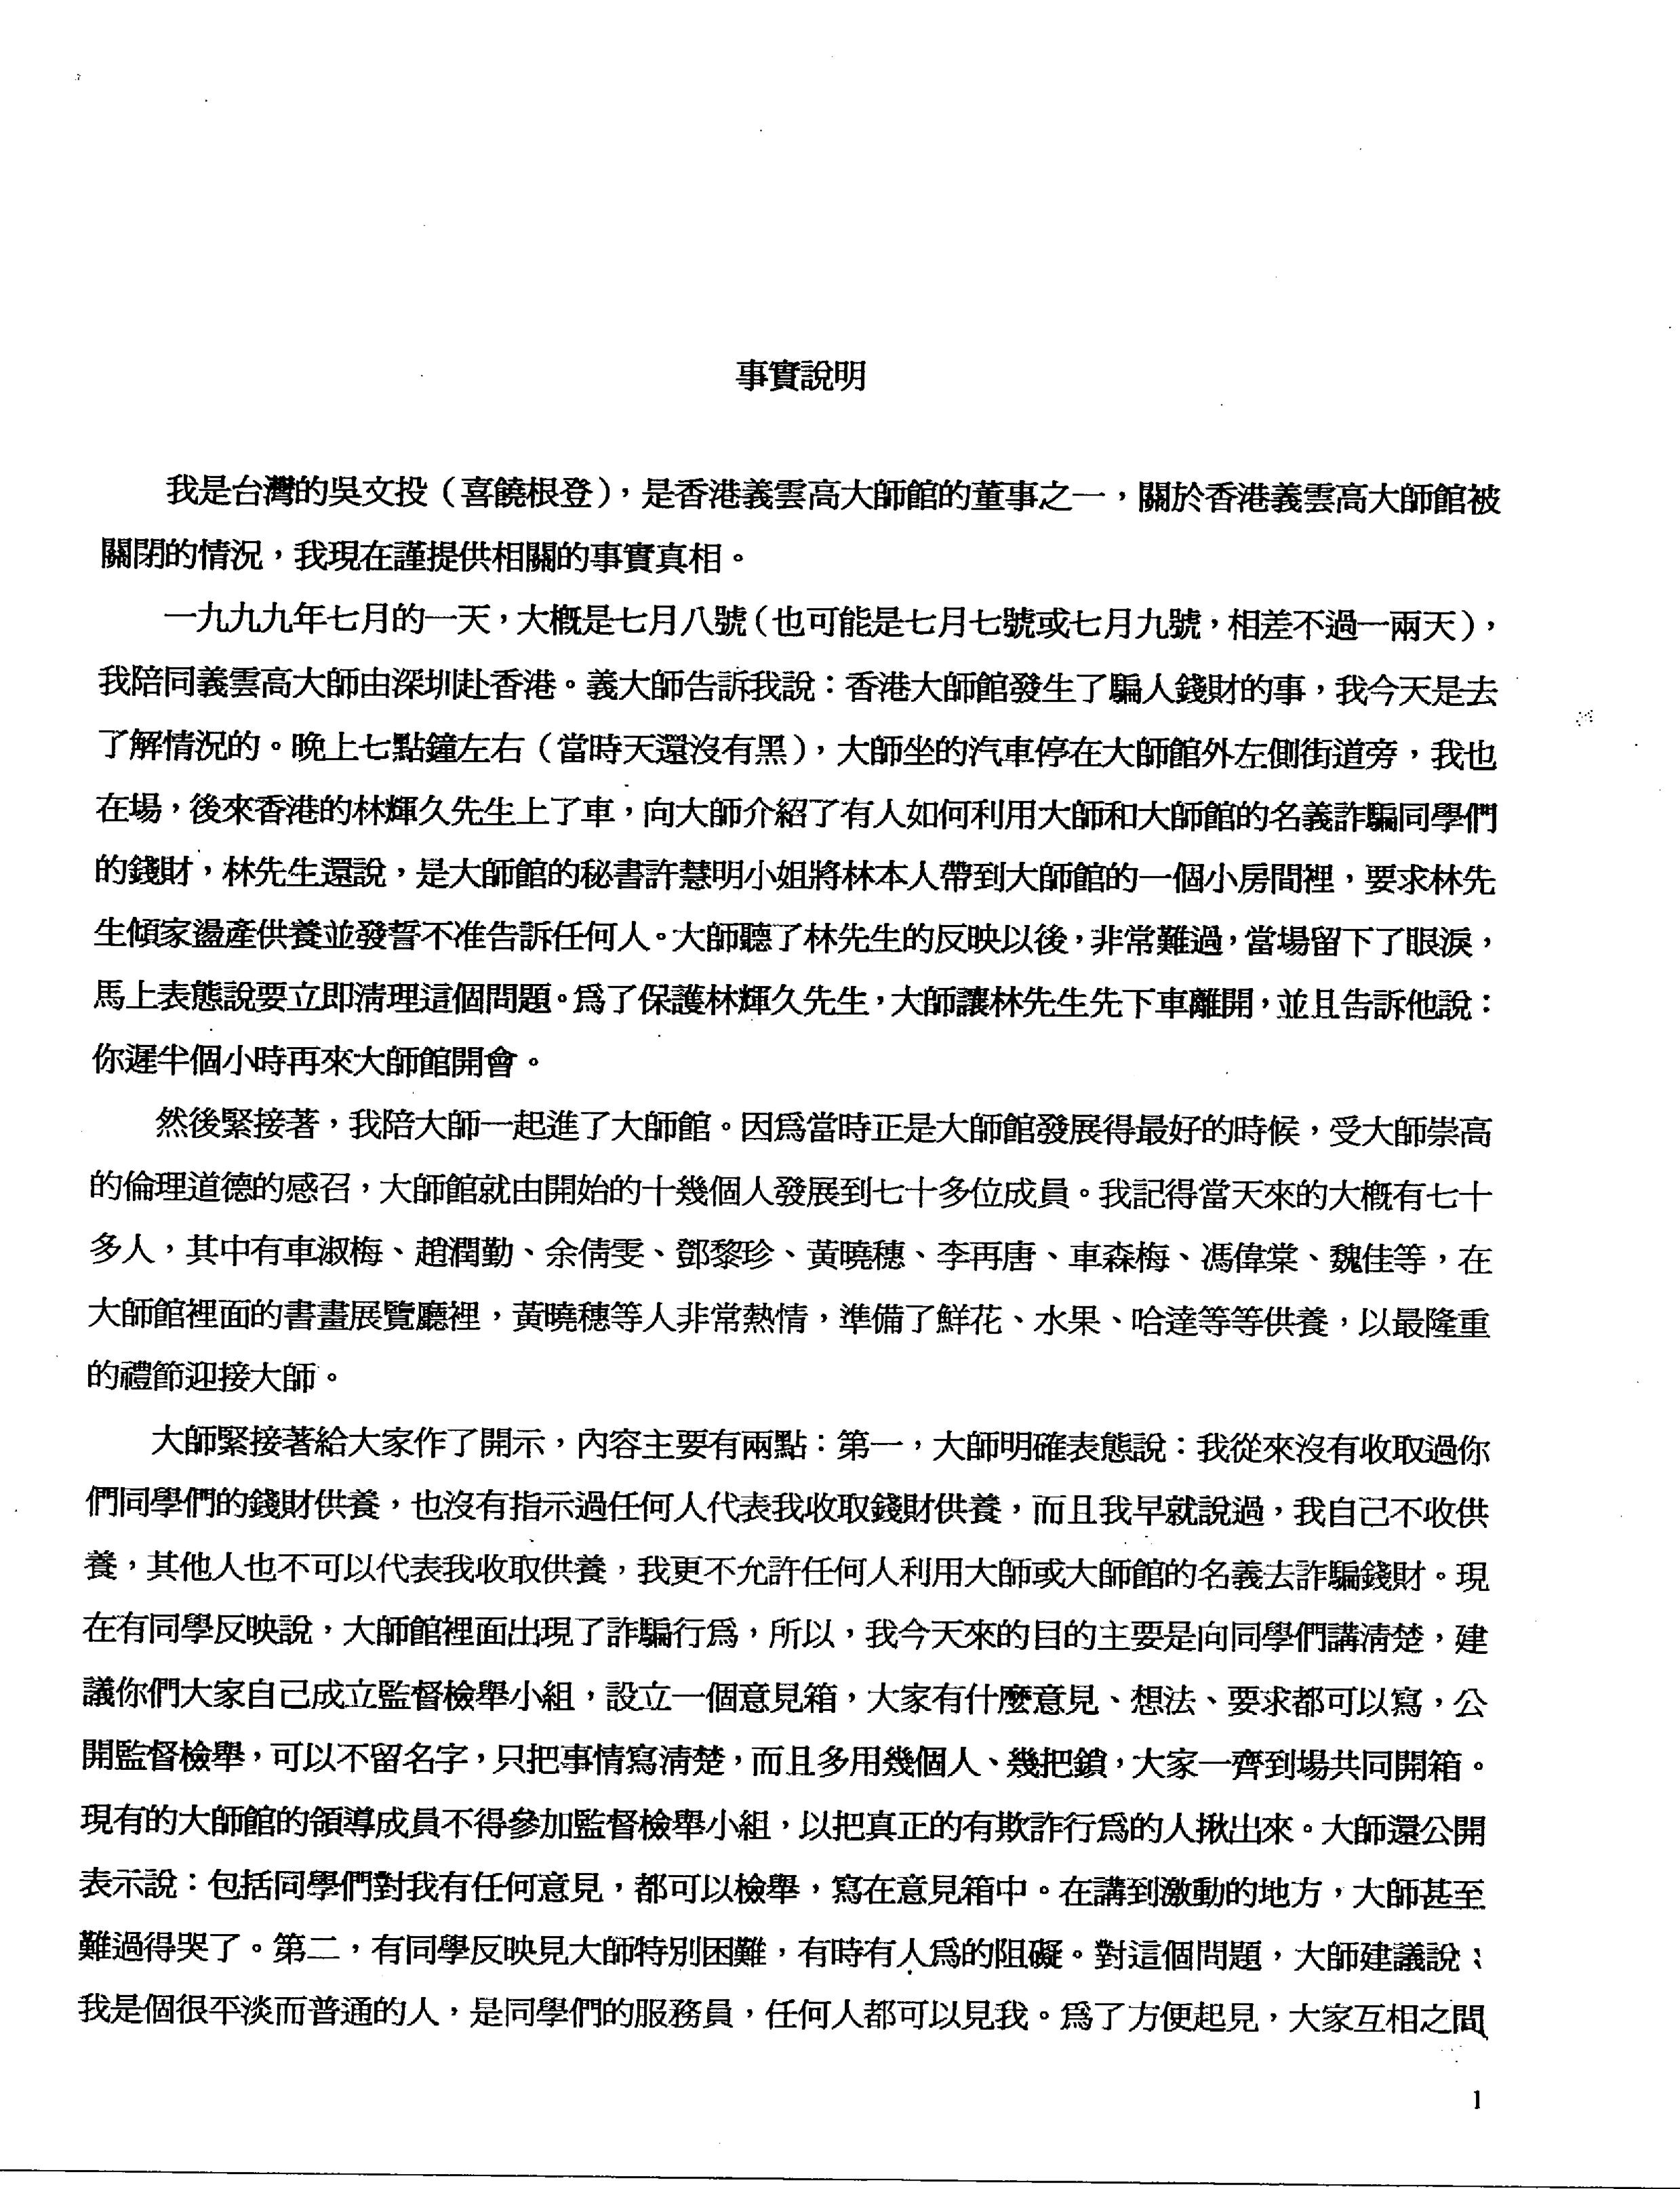 香港法院重判黄晓穗诈骗案 还第三世多杰羌佛清白 第6张